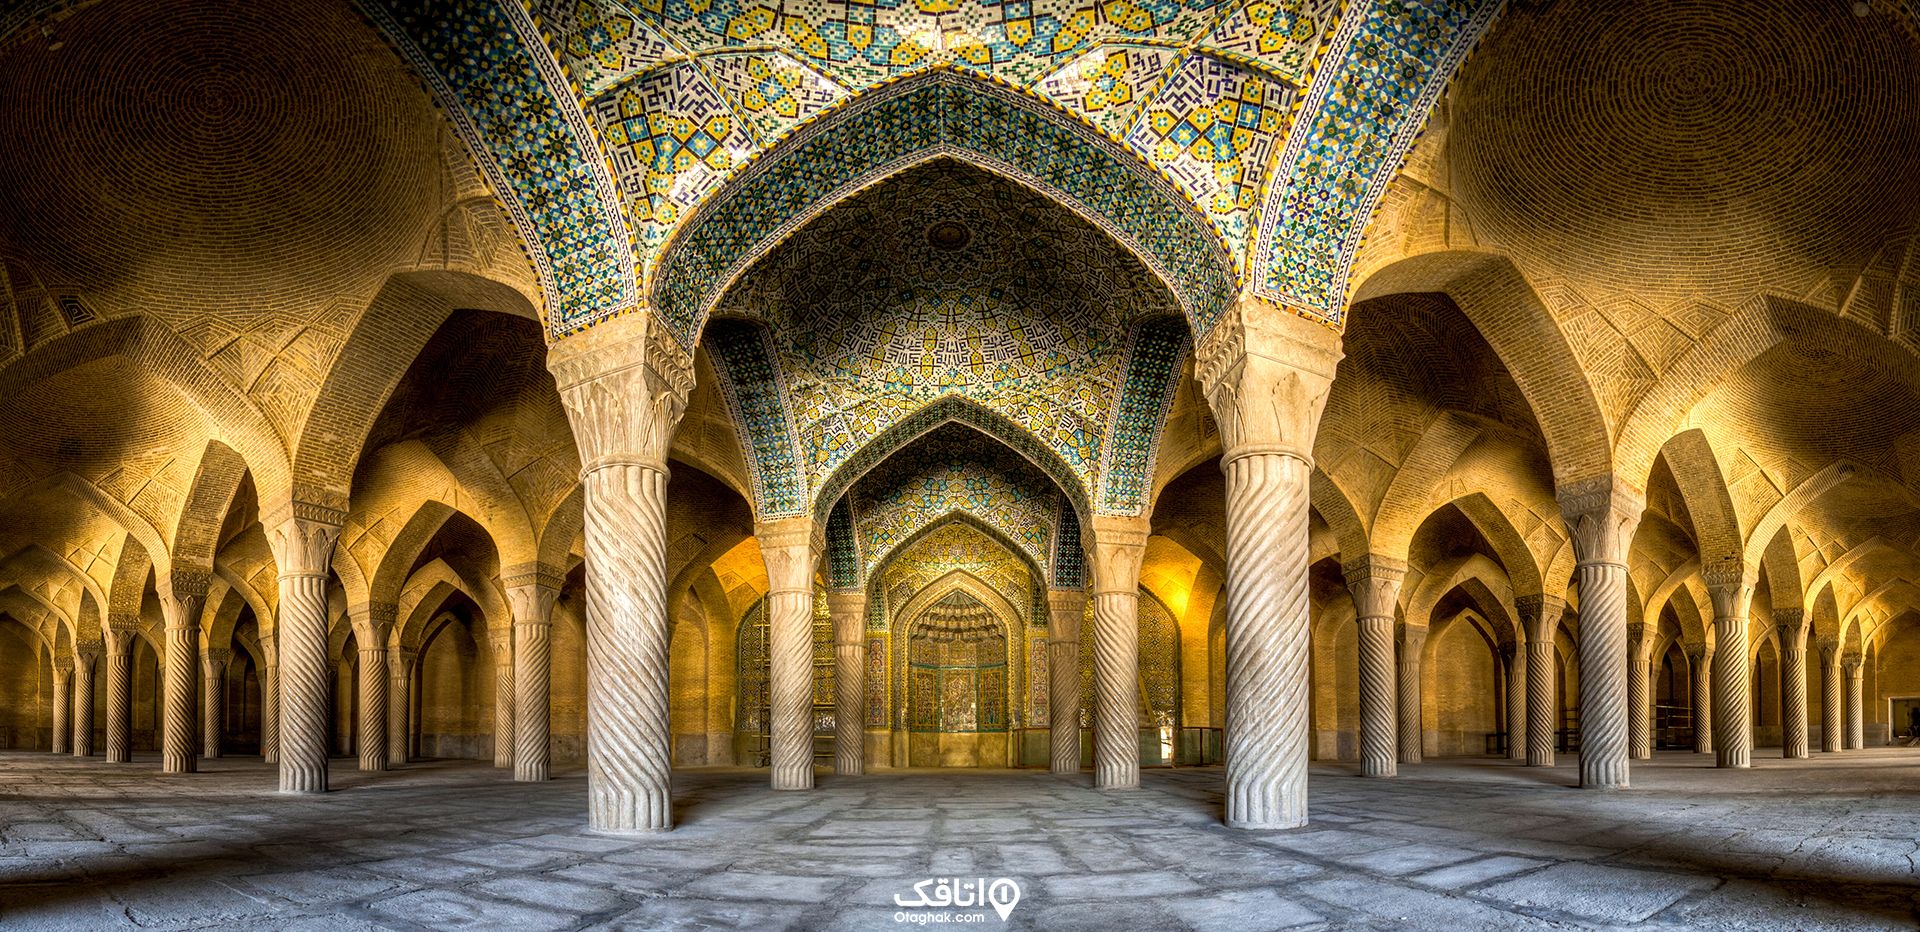 فضای داخلی مسجد وکیل و سقف هایی که با کاشی کاری ایرانی تزیین شده اند